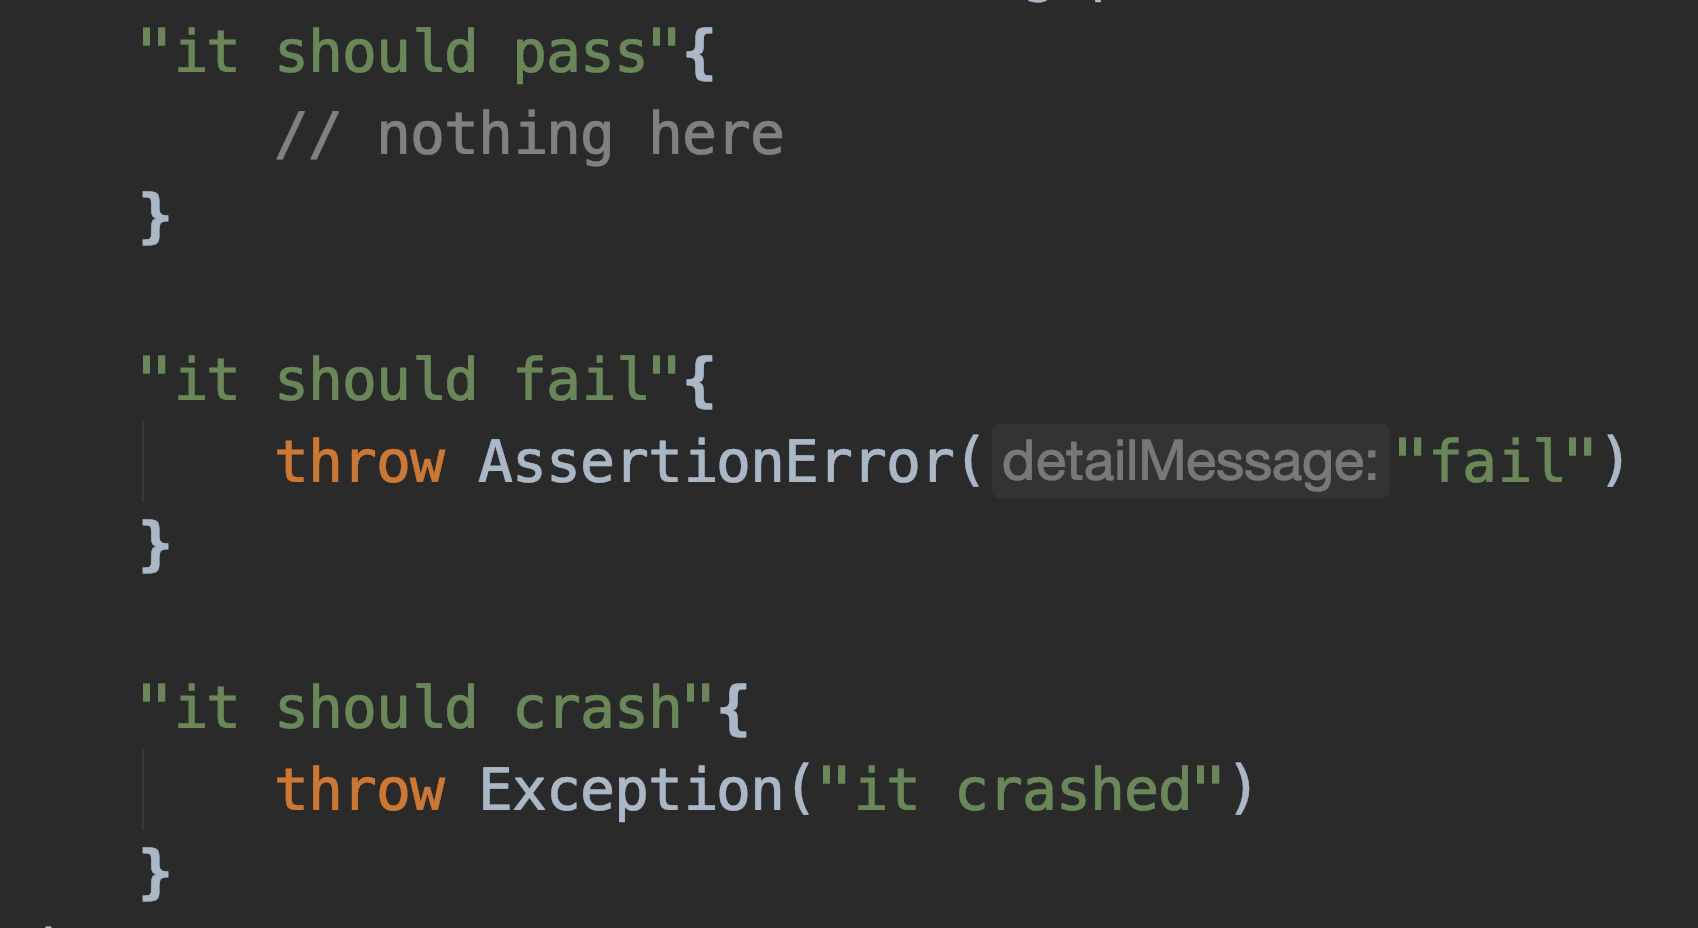 Test execution basics: passed, failed, crashed